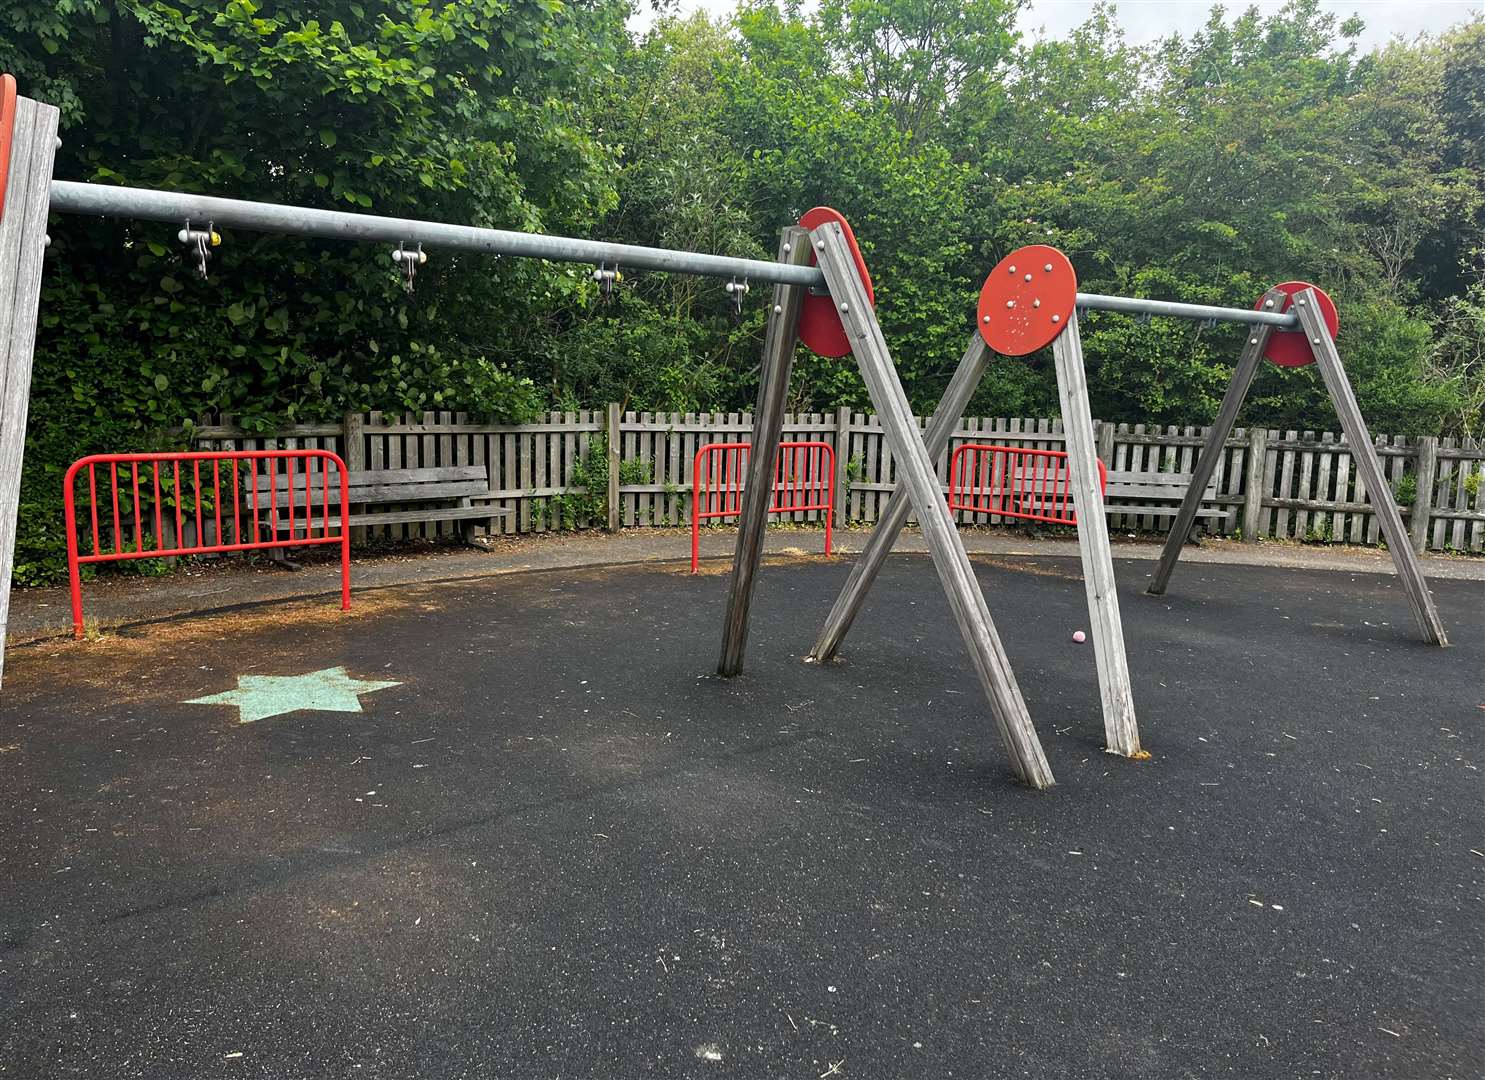 Vandalised swings at Stone Castle Park in Stone.